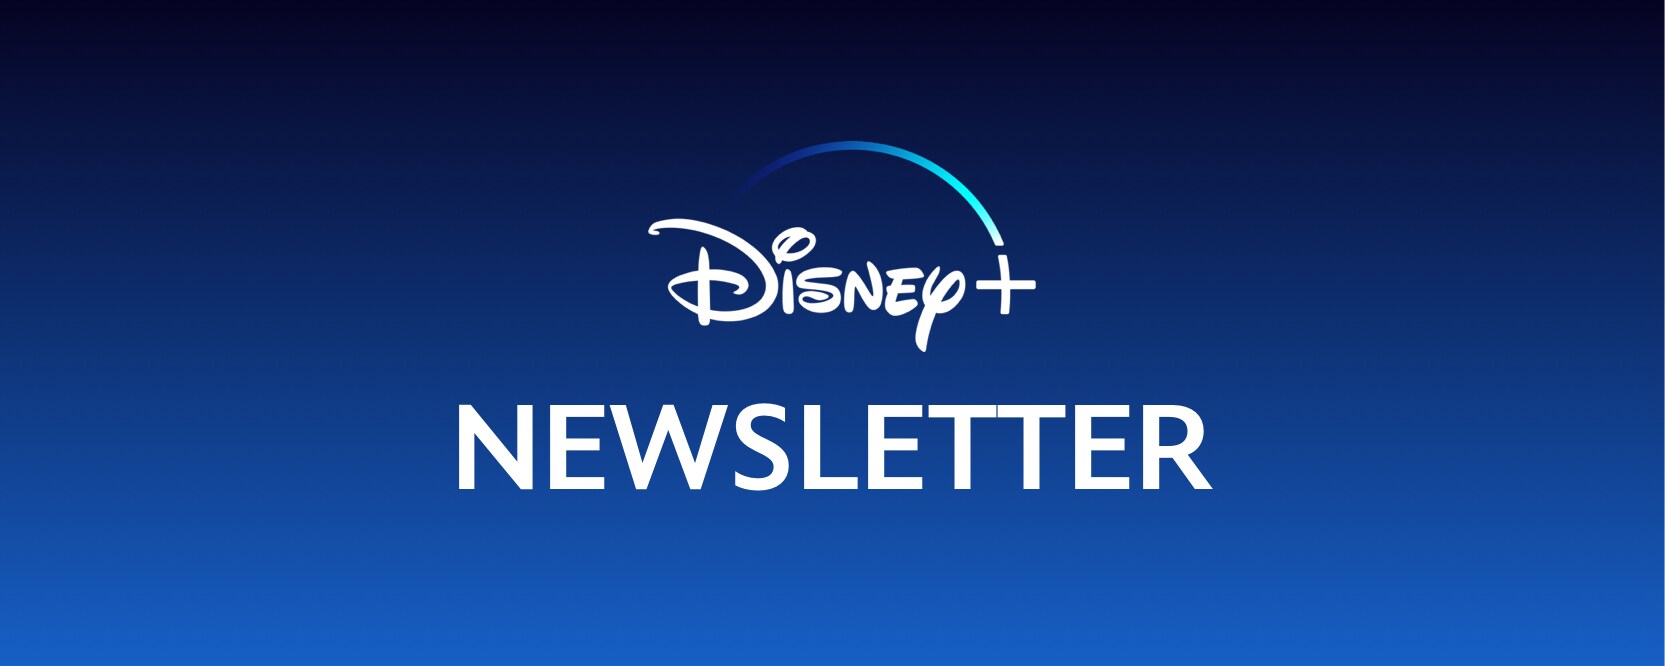 Disney+ Newsletter